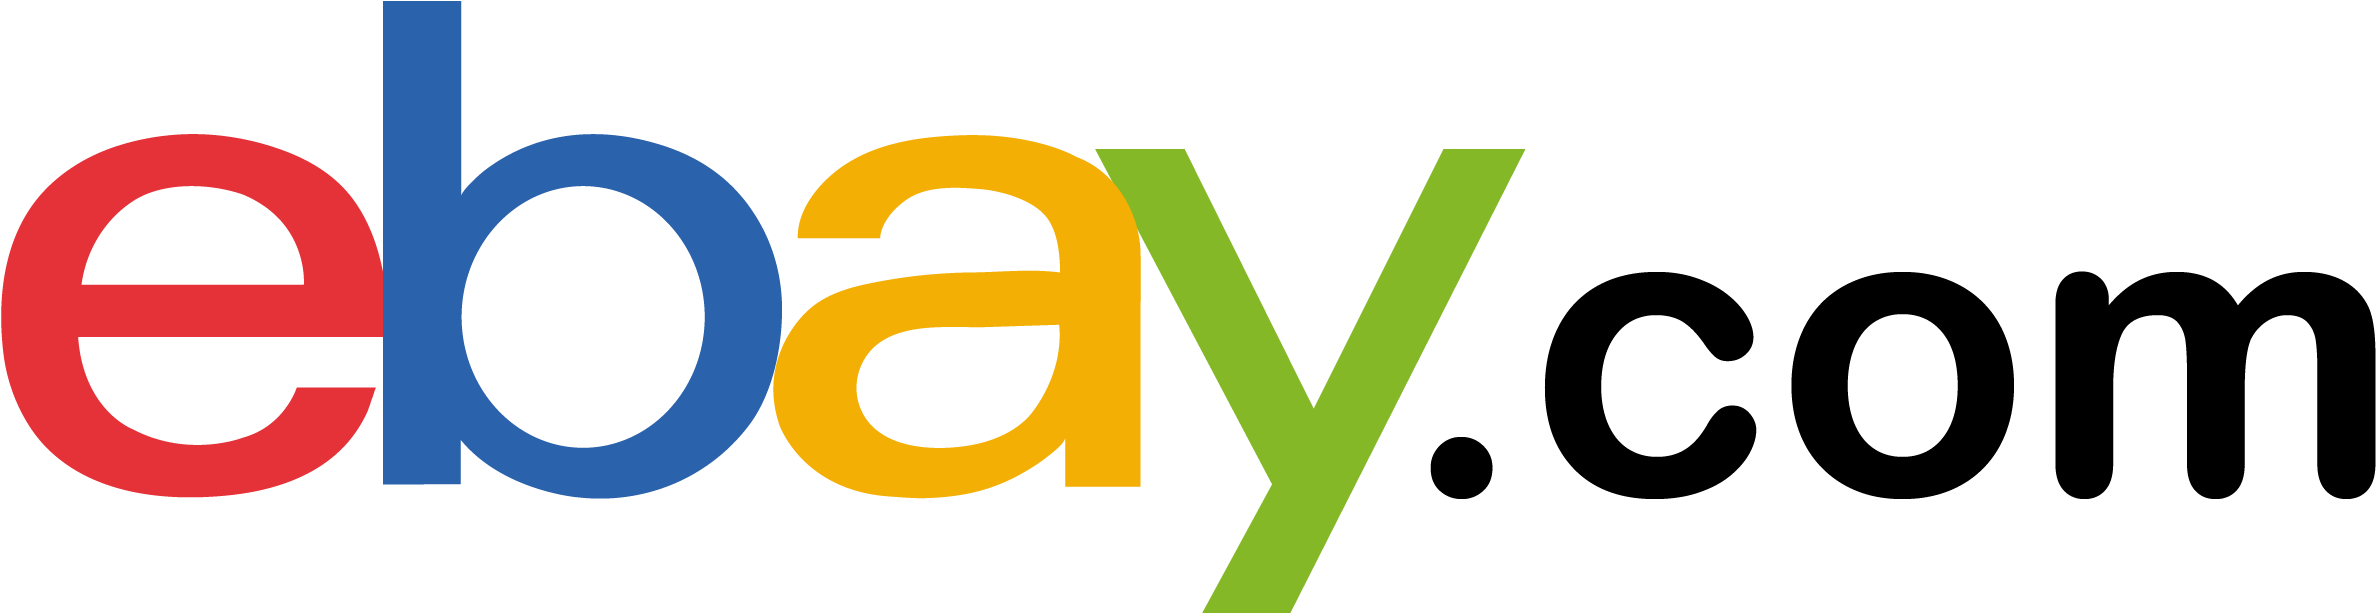 Logo eBay PNG Gambar Transparan